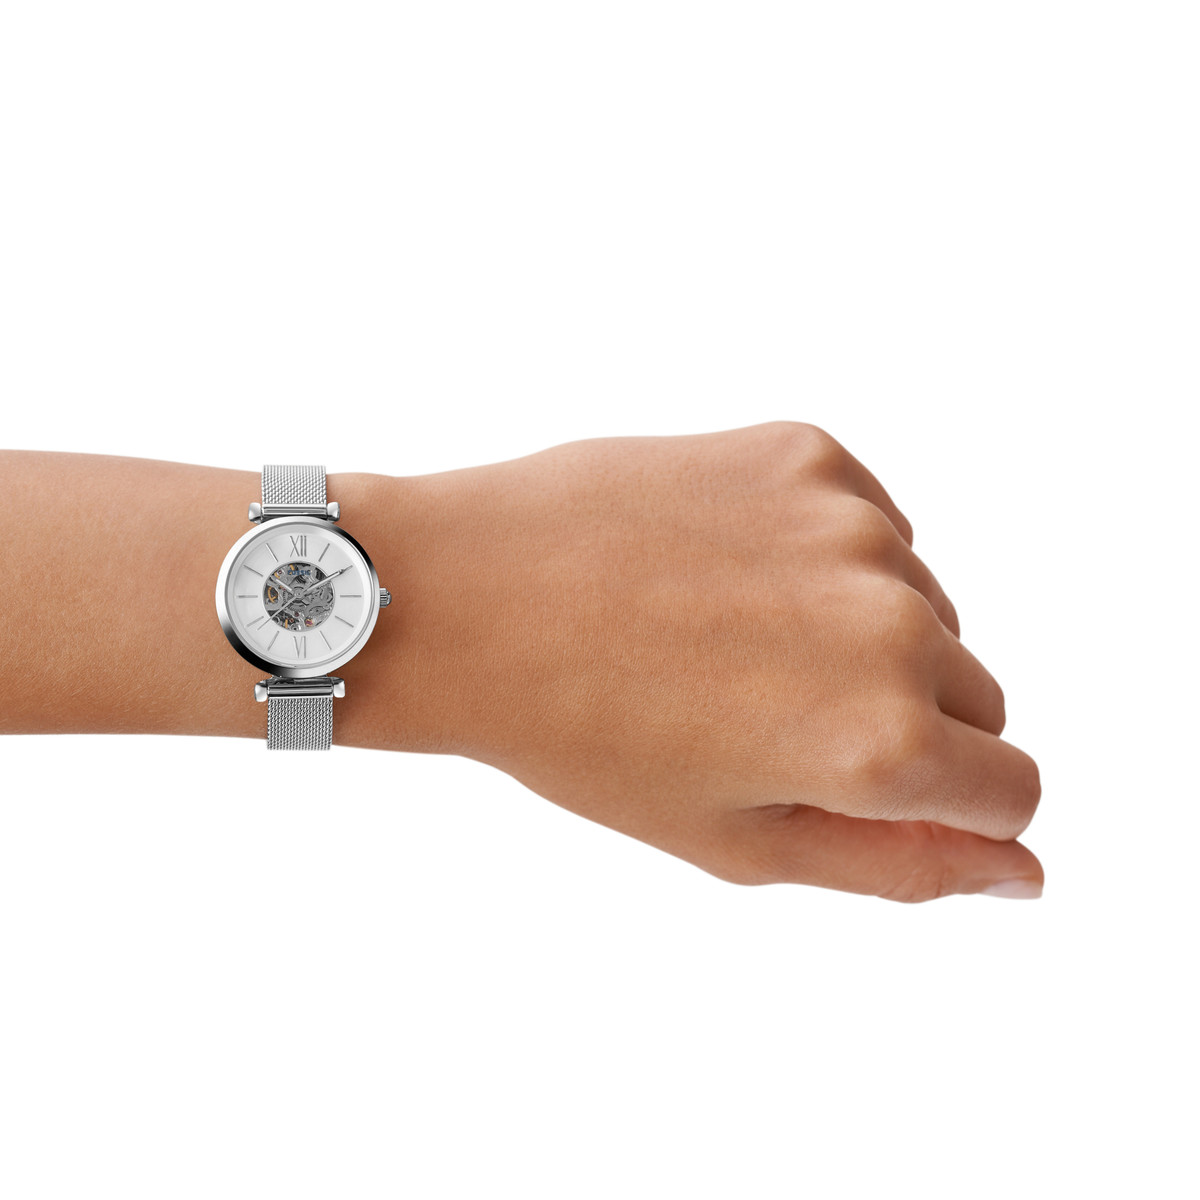 Montre FOSSIL femme automatique, bracelet acier inoxydable gris argent - vue porté 1